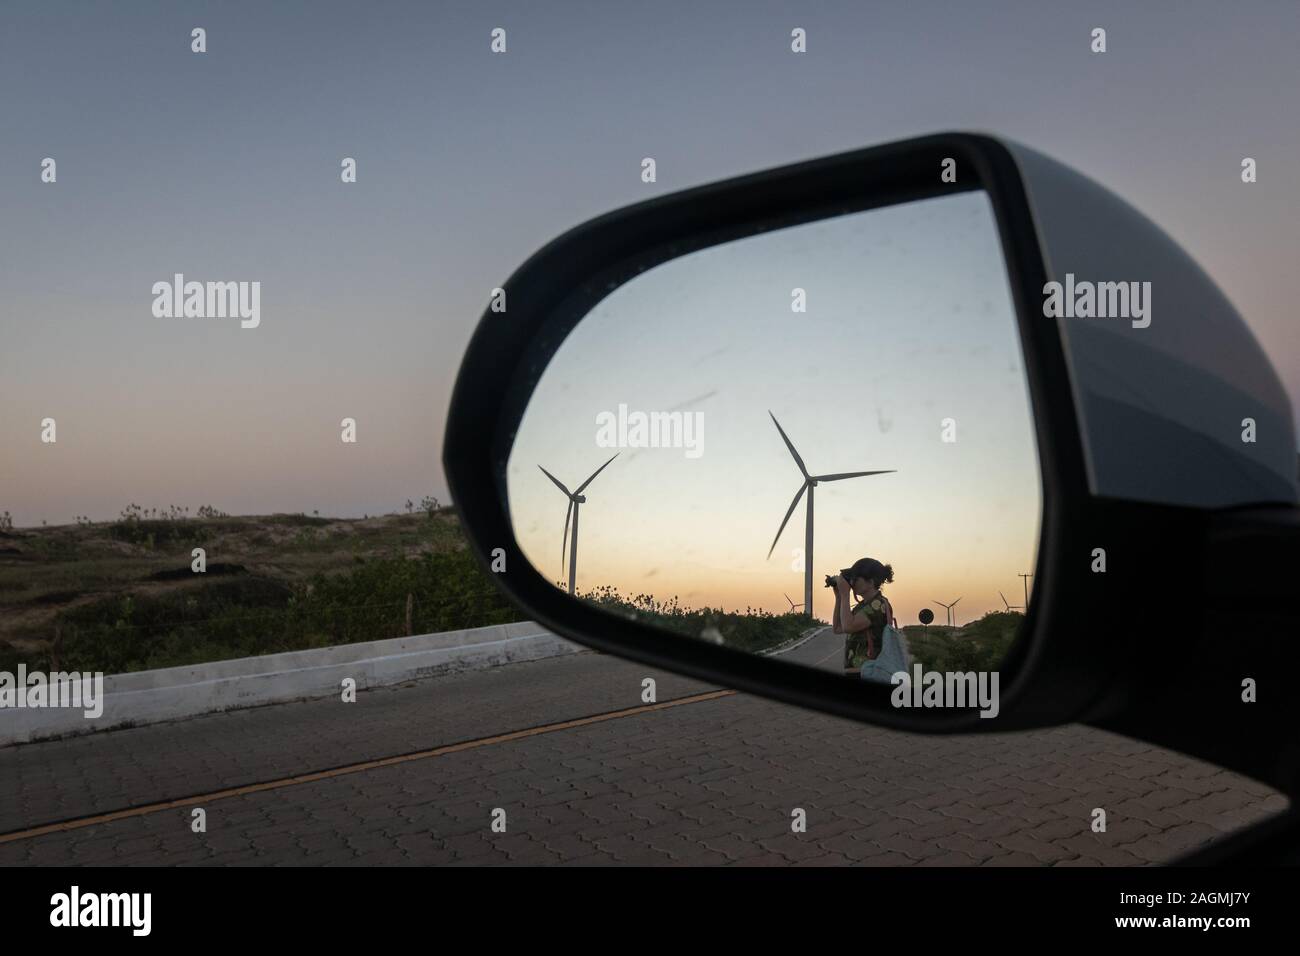 Windparks bei Sonnenuntergang von der Rückansicht aus gesehen Brasilien Stockfoto